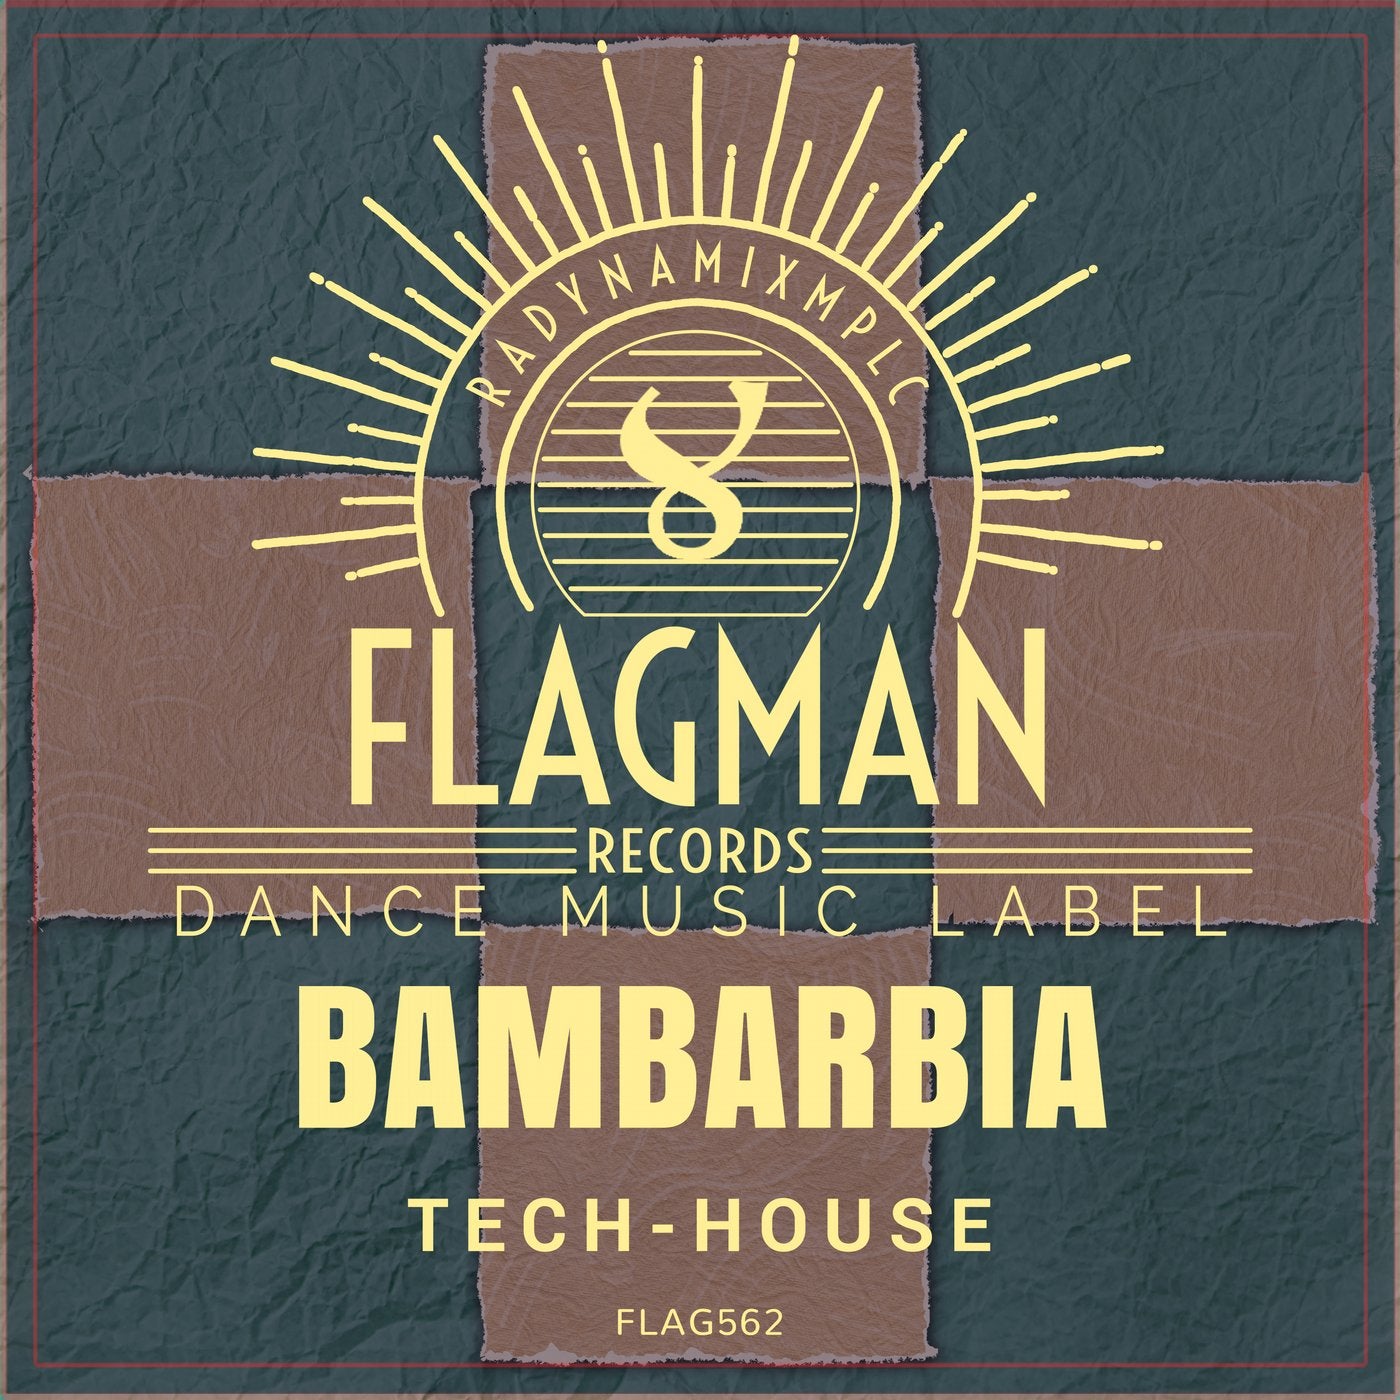 Bambarbia Tech-House